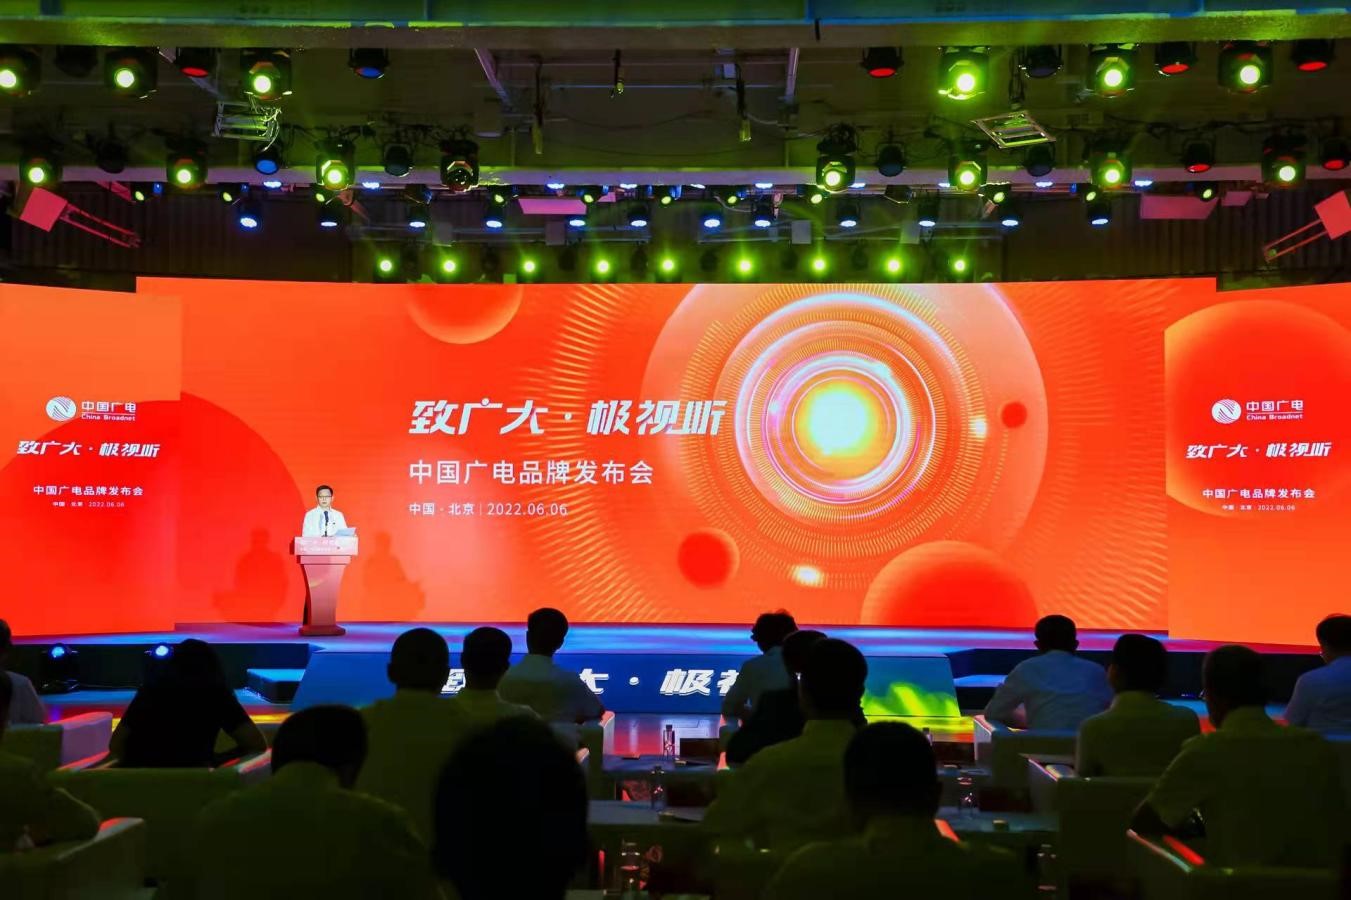 广电5G来了！中国广电广州公司将开拓政企市场